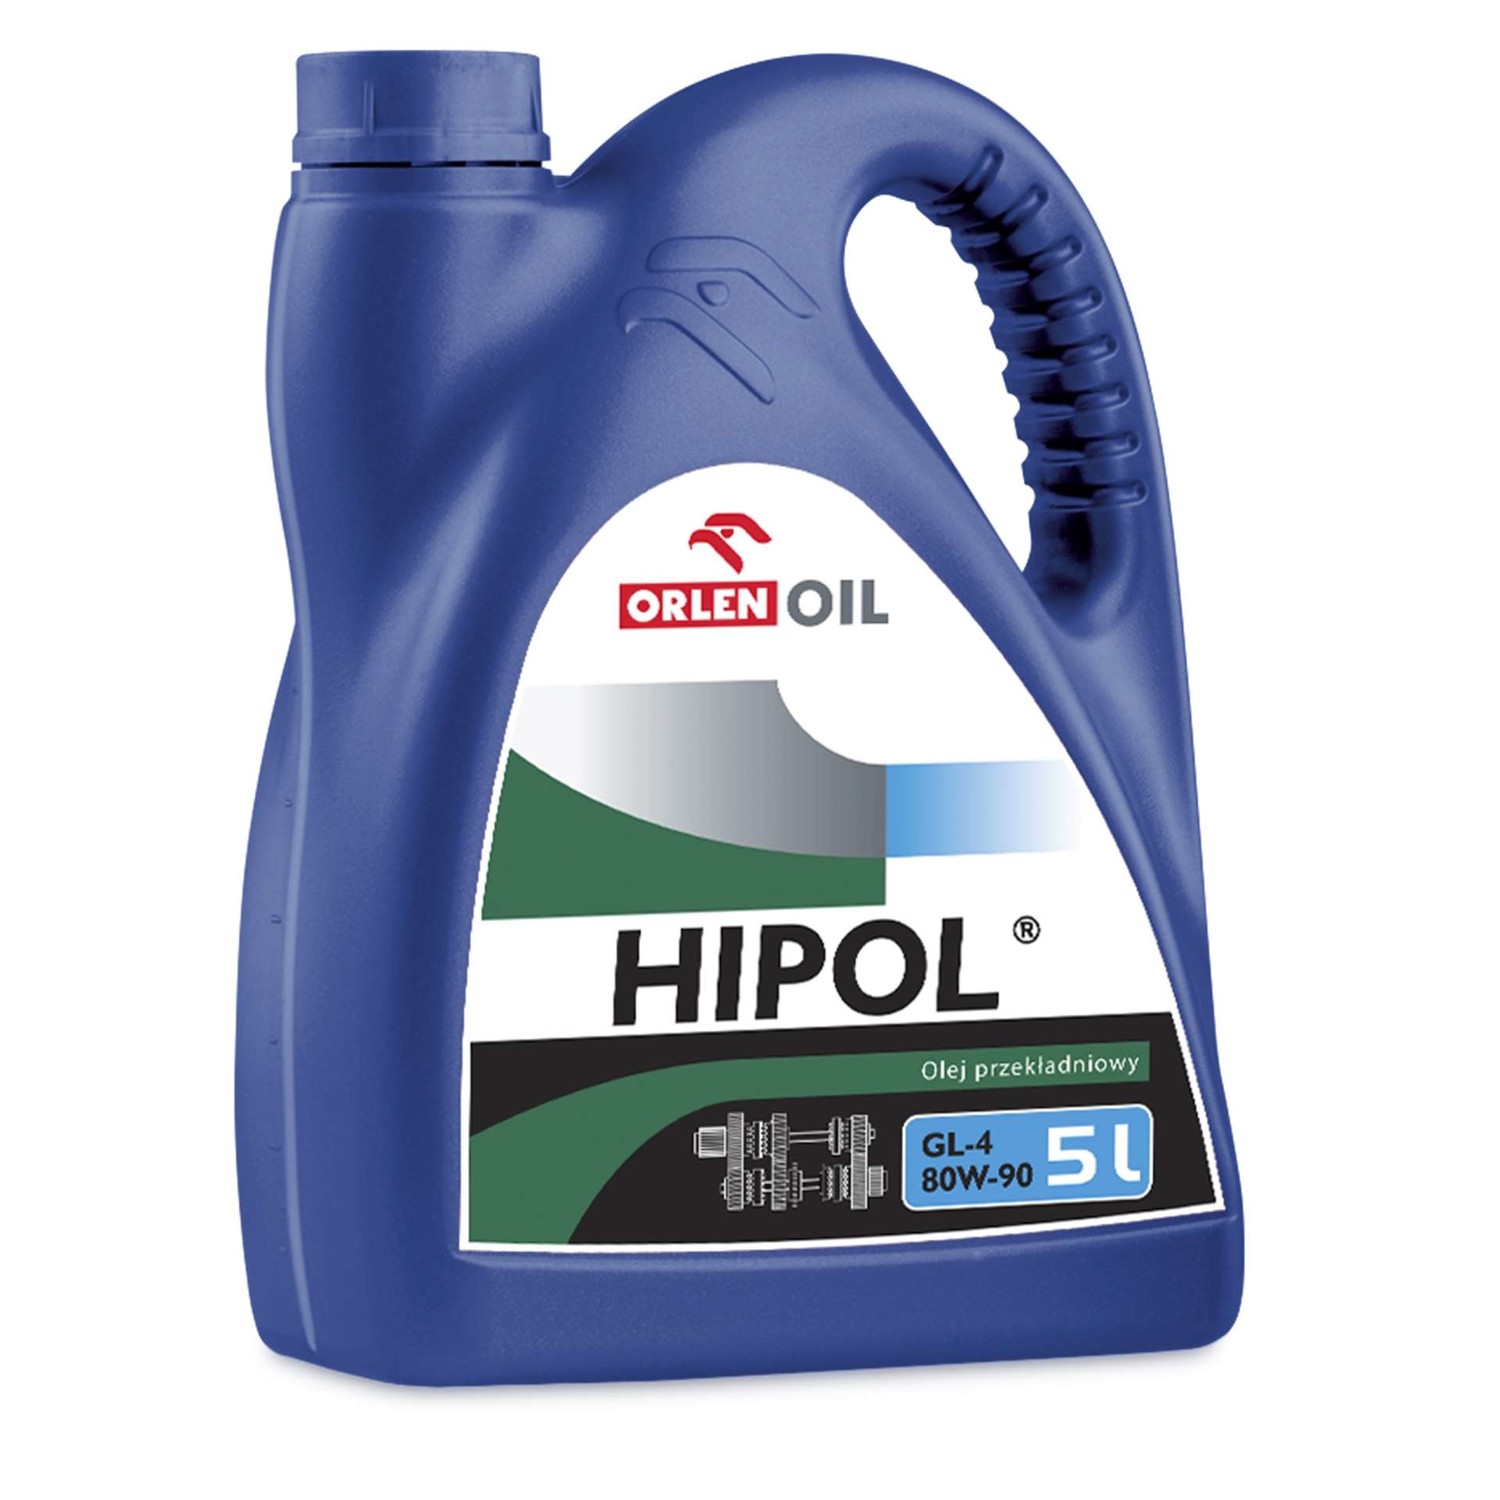 Orlen Oil Hipol GL4 80W-90 5L